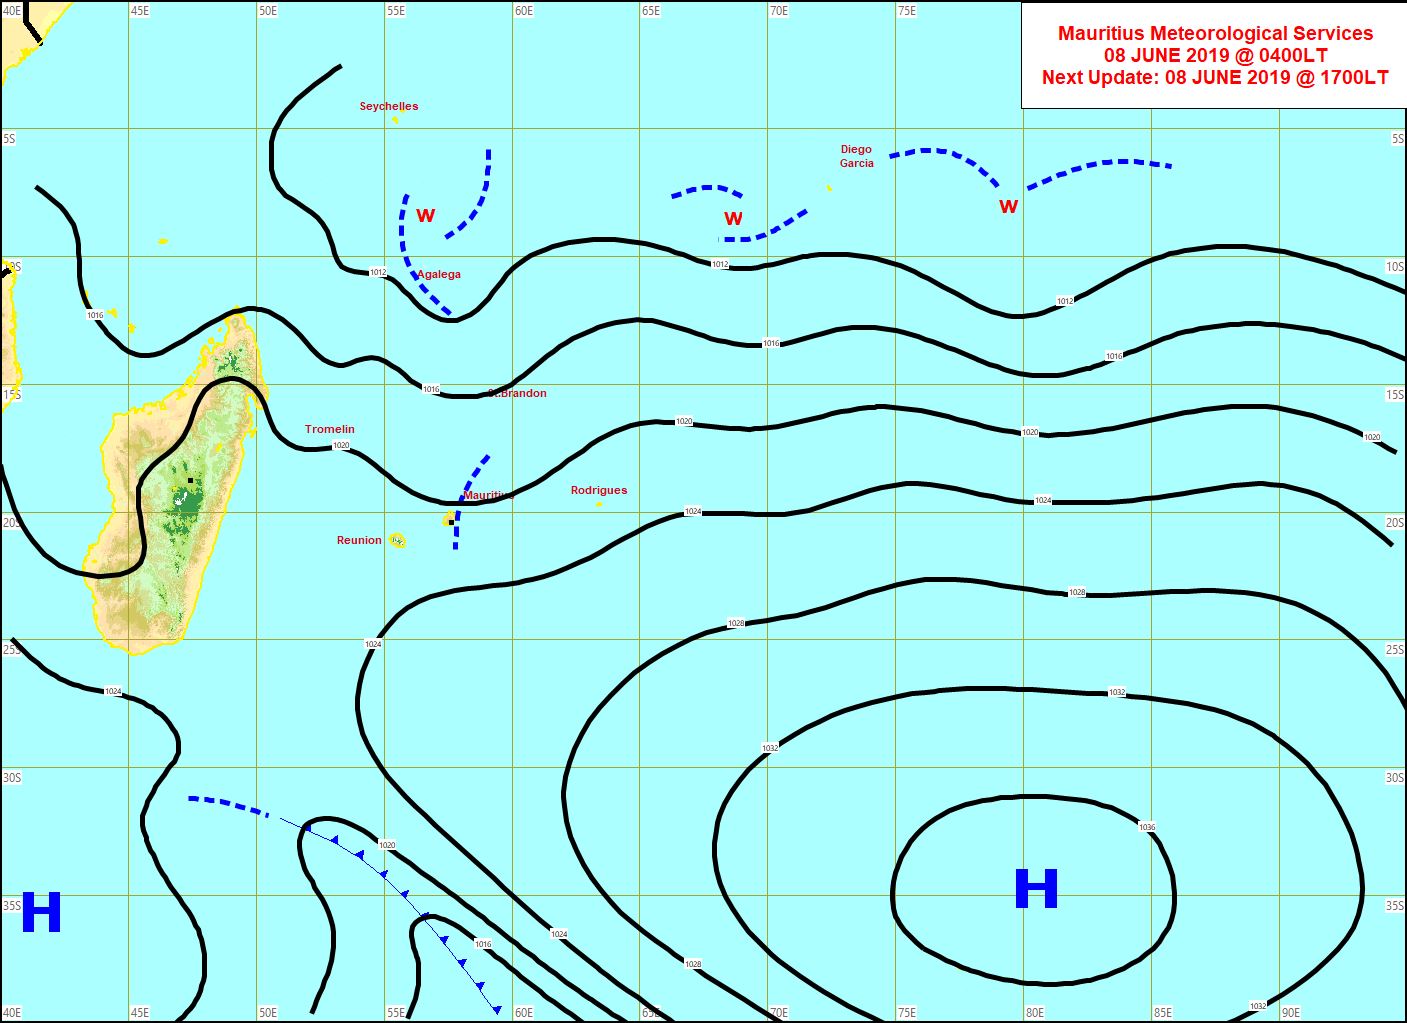 Analyse de surface de 4heures ce matin. L'anticyclone(H) s'éloigne enfin. Le vent faiblit avec une journée de Dimanche calme à ce niveau sur la REUNION avant le retour de vents forts pour Lundi. MMS